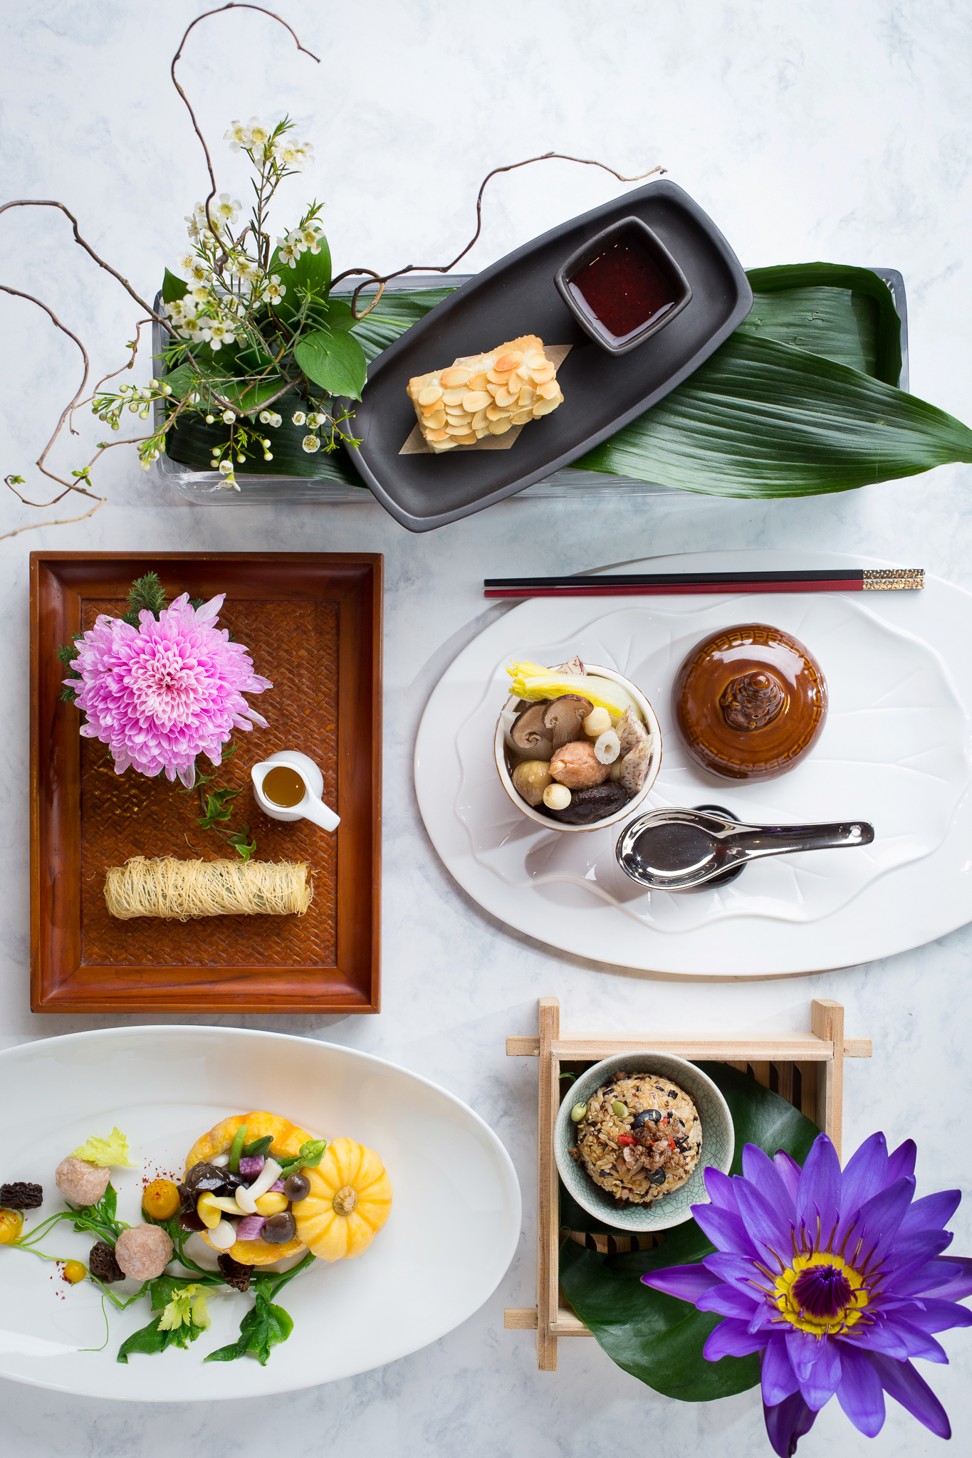 Vegan dishes from Grand Hyatt Taipei’s Chinese banquet